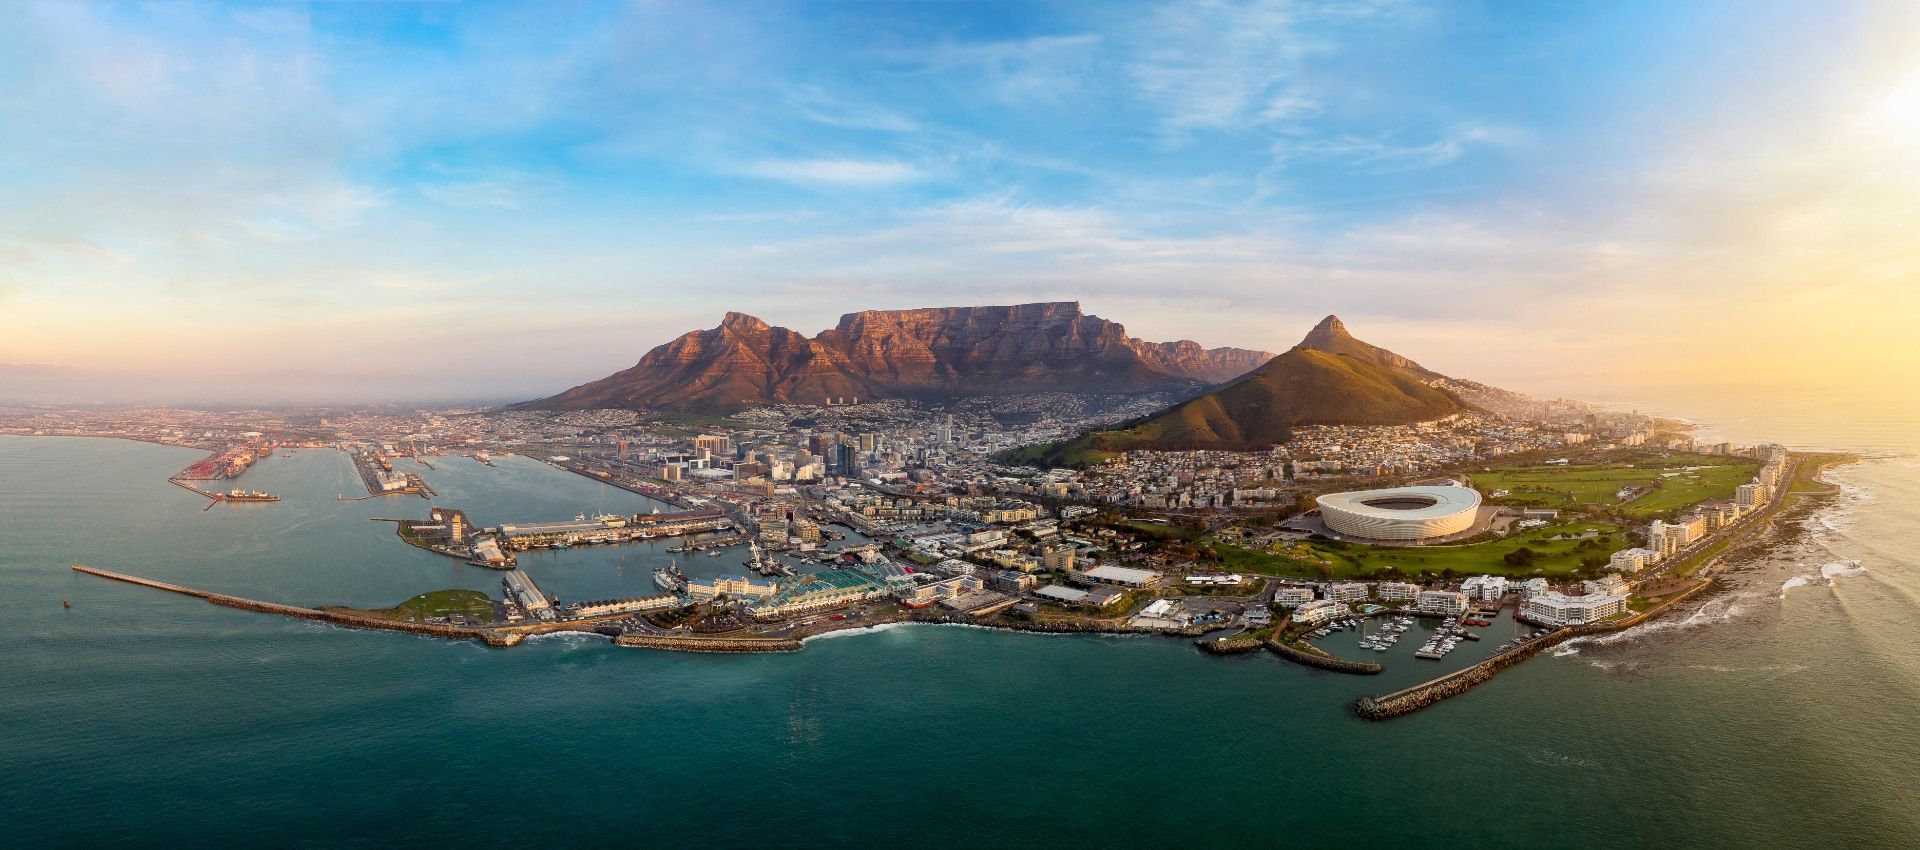 Sudafrica: Tour classico con charme speciale capodanno 11 giorni dal 27 dicembre